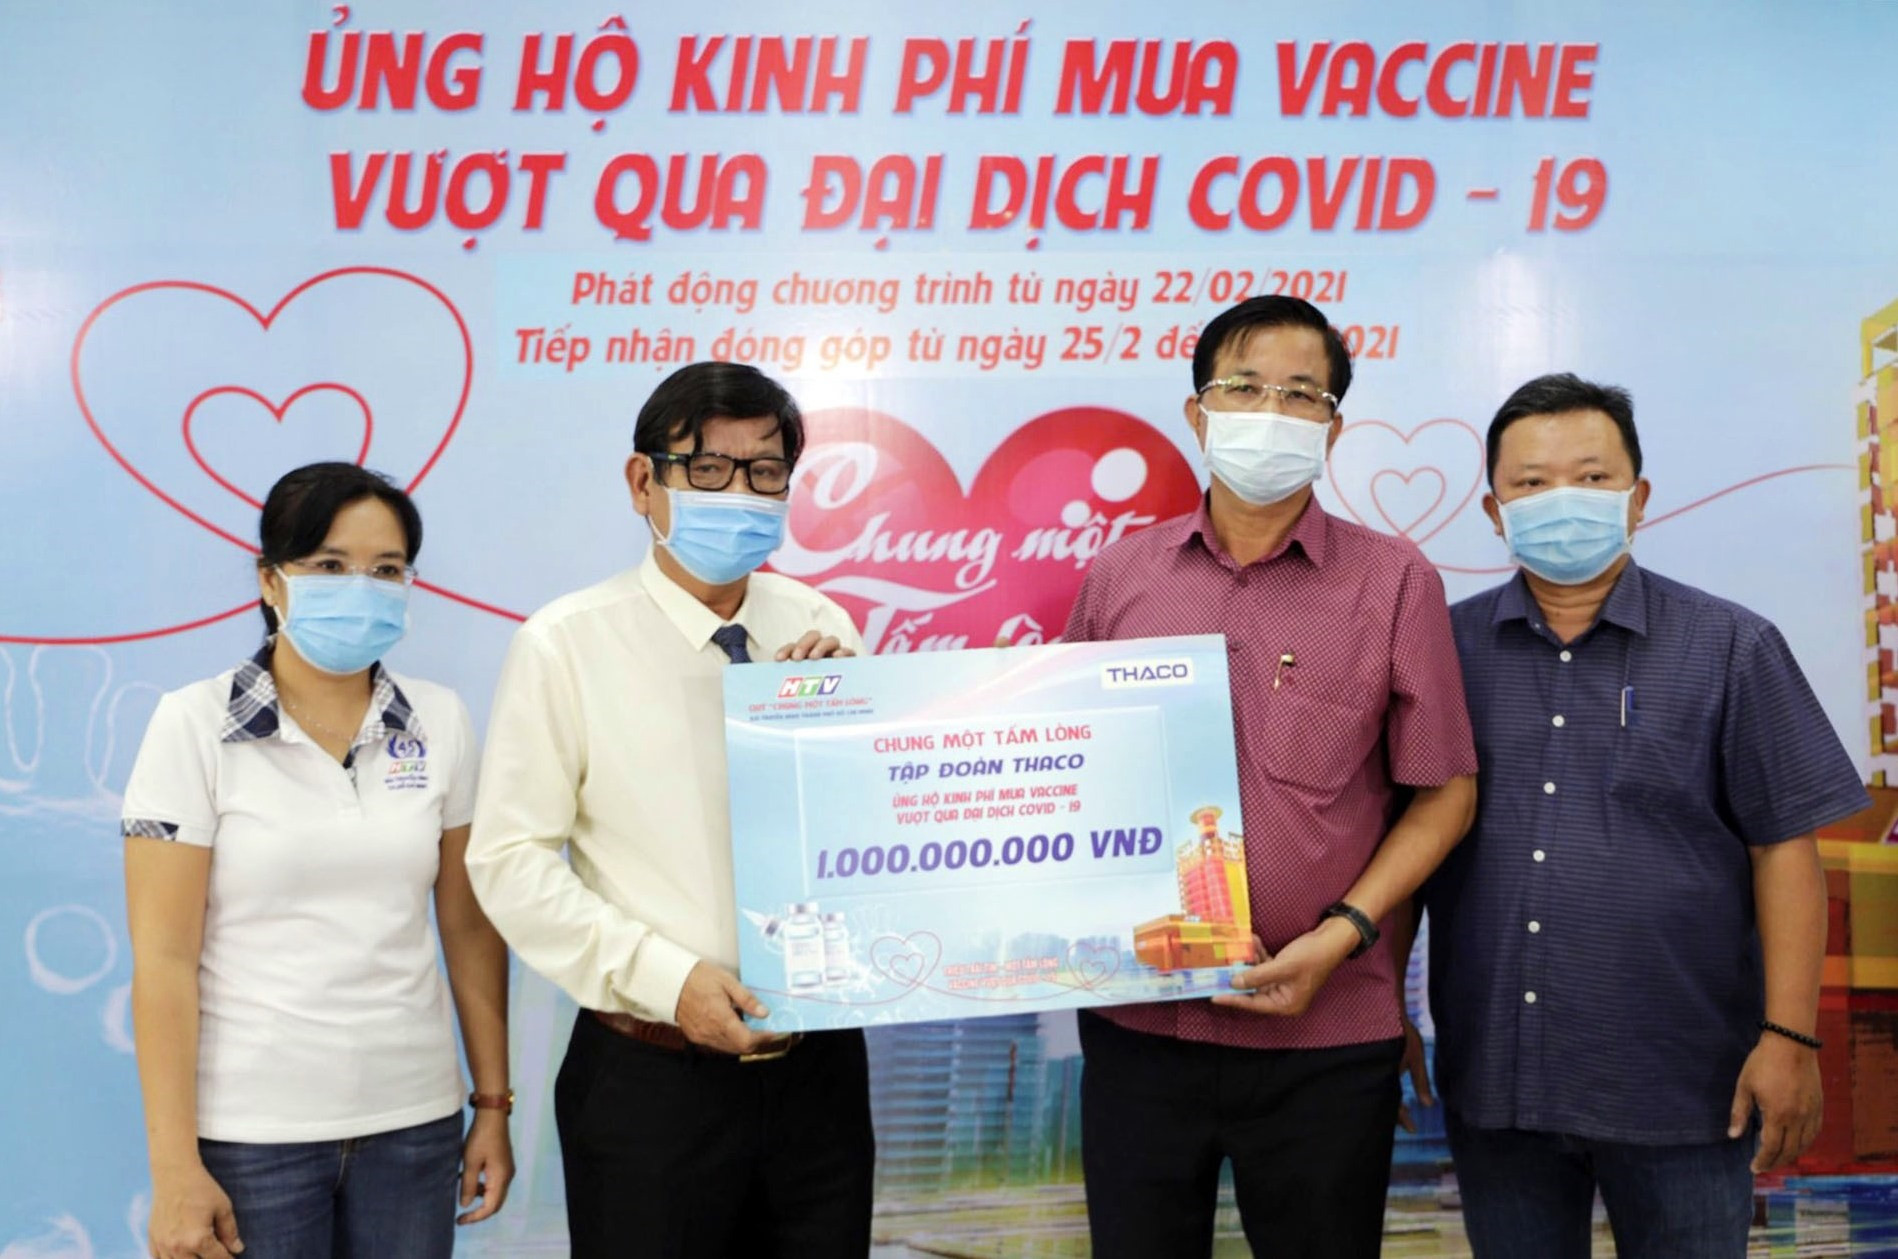 Thaco ủng hộ Quỹ “Chung một tấm lòng” 1 tỷ đồng.